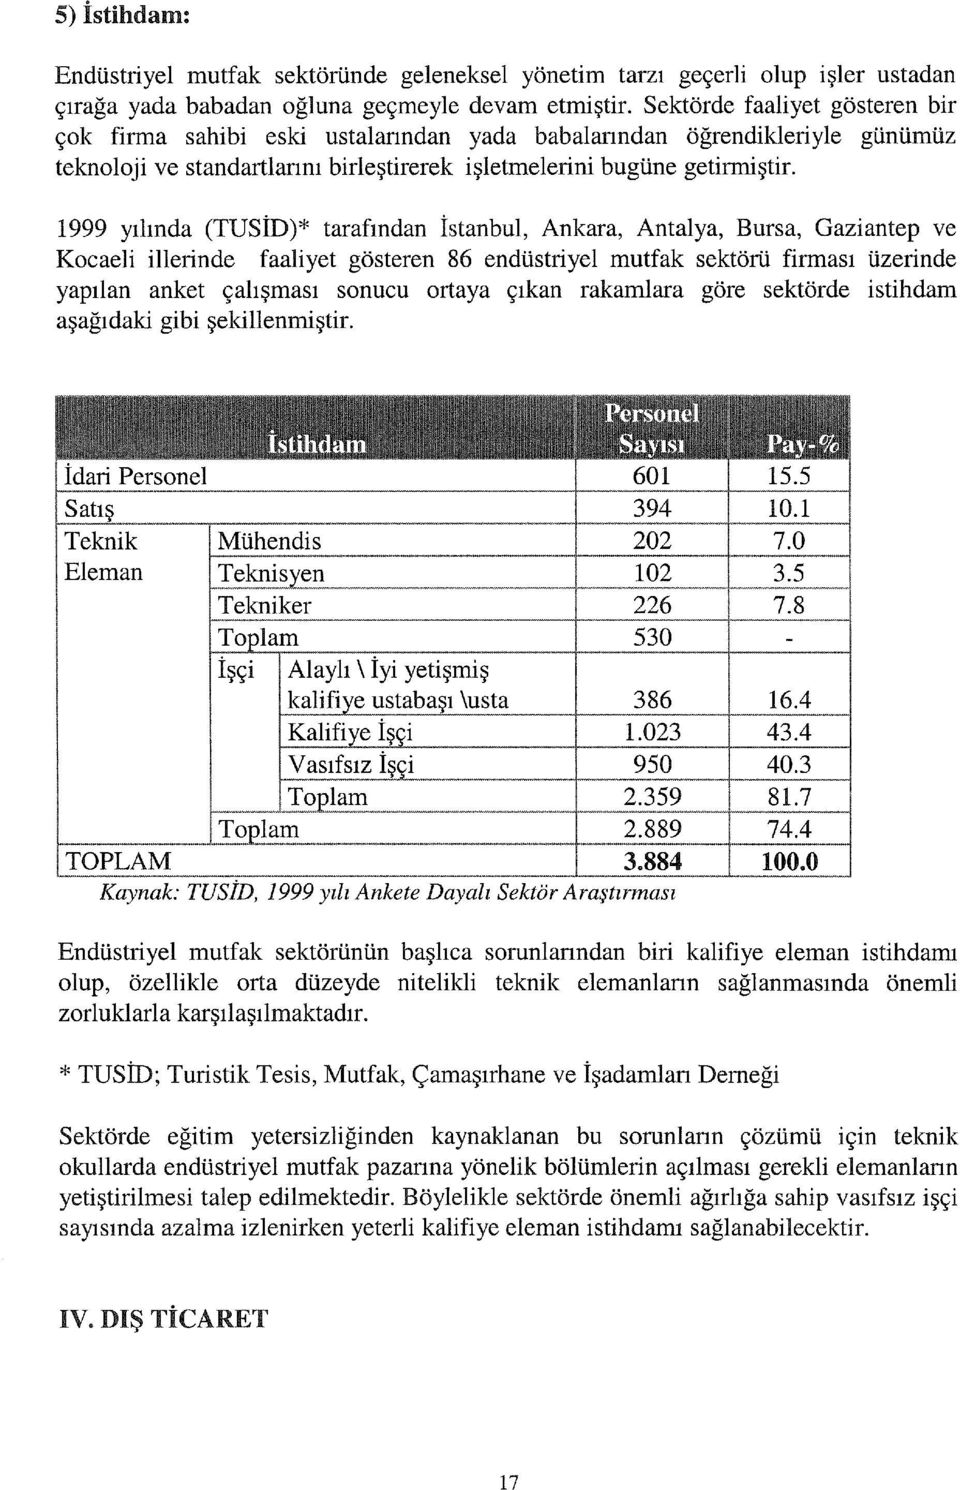 1999 yılında (TUSİD)* tarafından İstanbul, Ankara, Antalya, Bursa, Gaziantep ve Kocaeli illerinde faaliyet gösteren 86 endüstriyel mutfak sektörü firması üzerinde yapılan anket çalışması sonucu